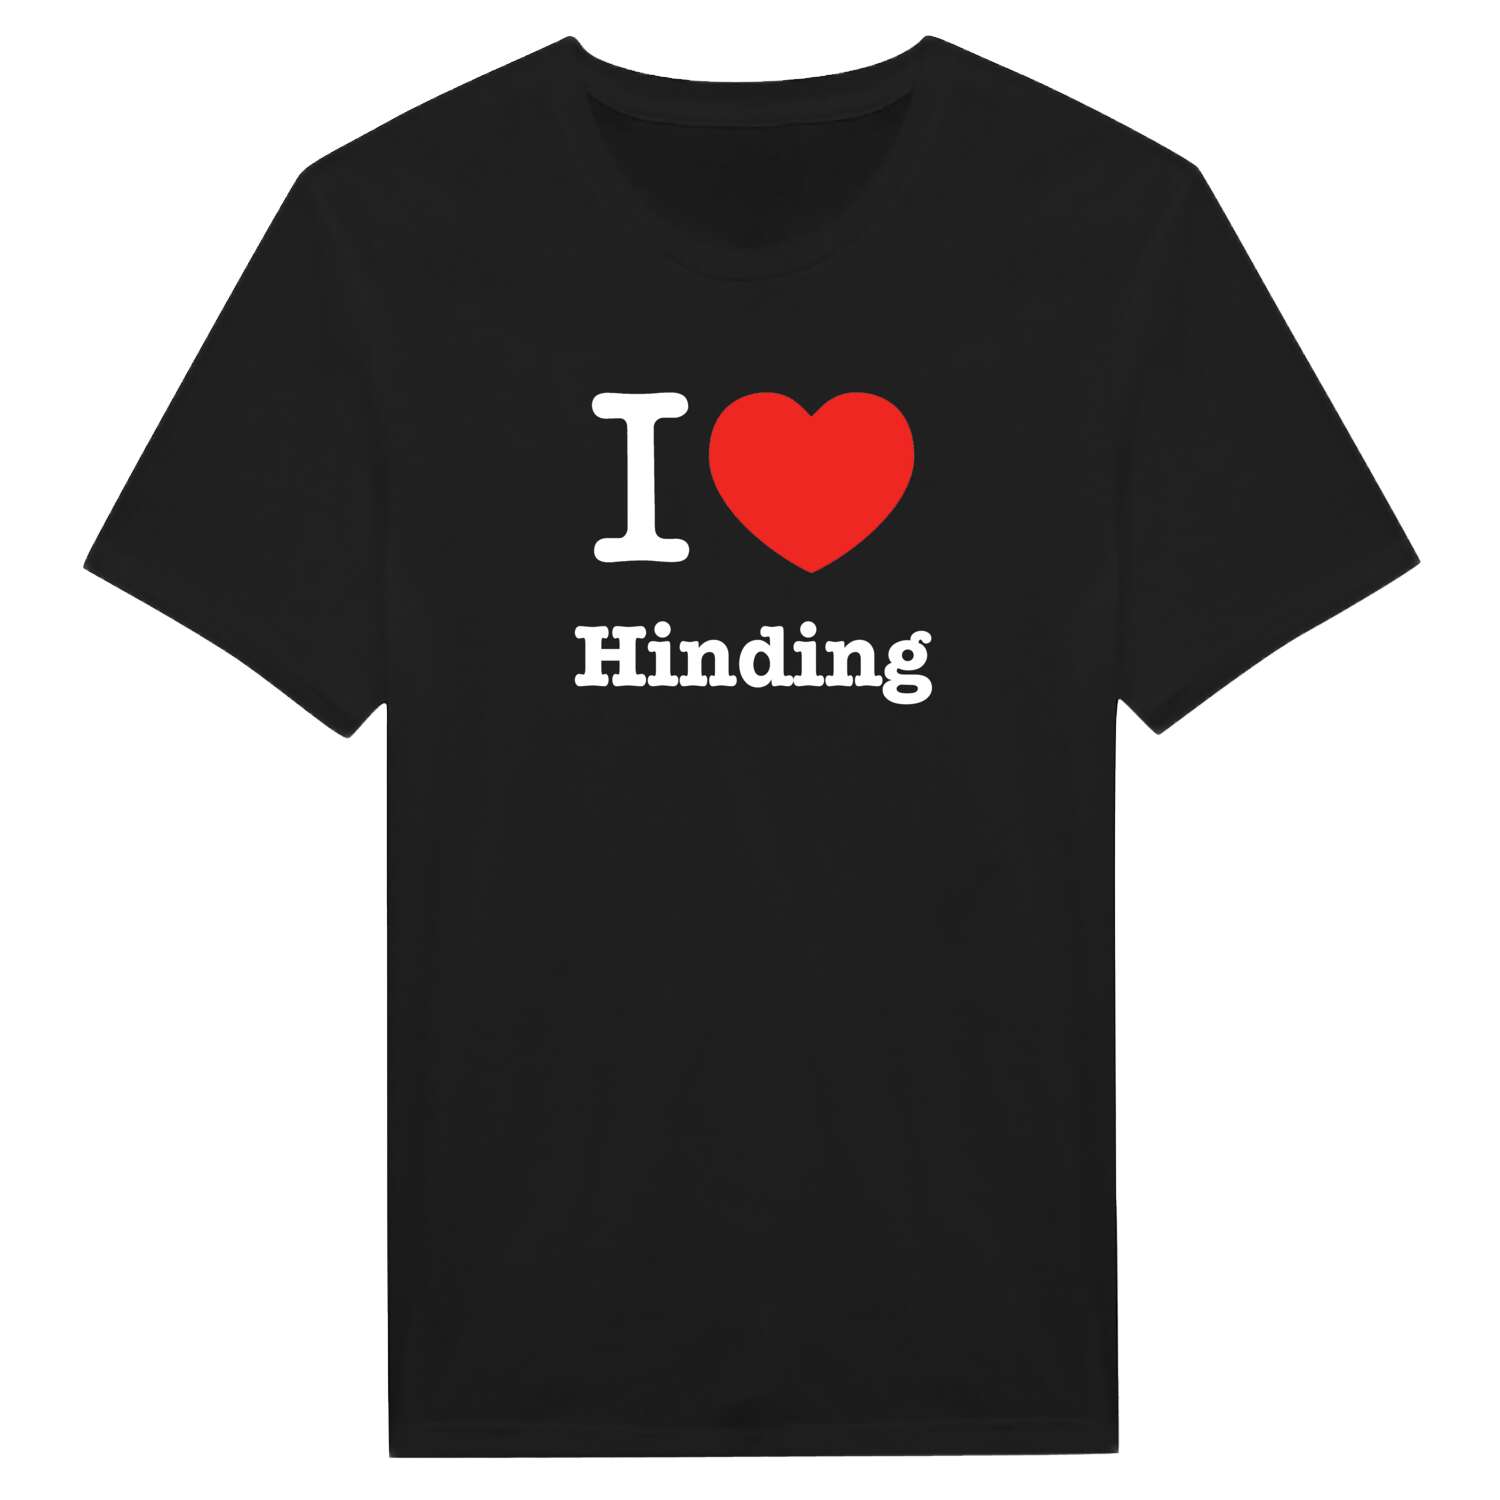 Hinding T-Shirt »I love«